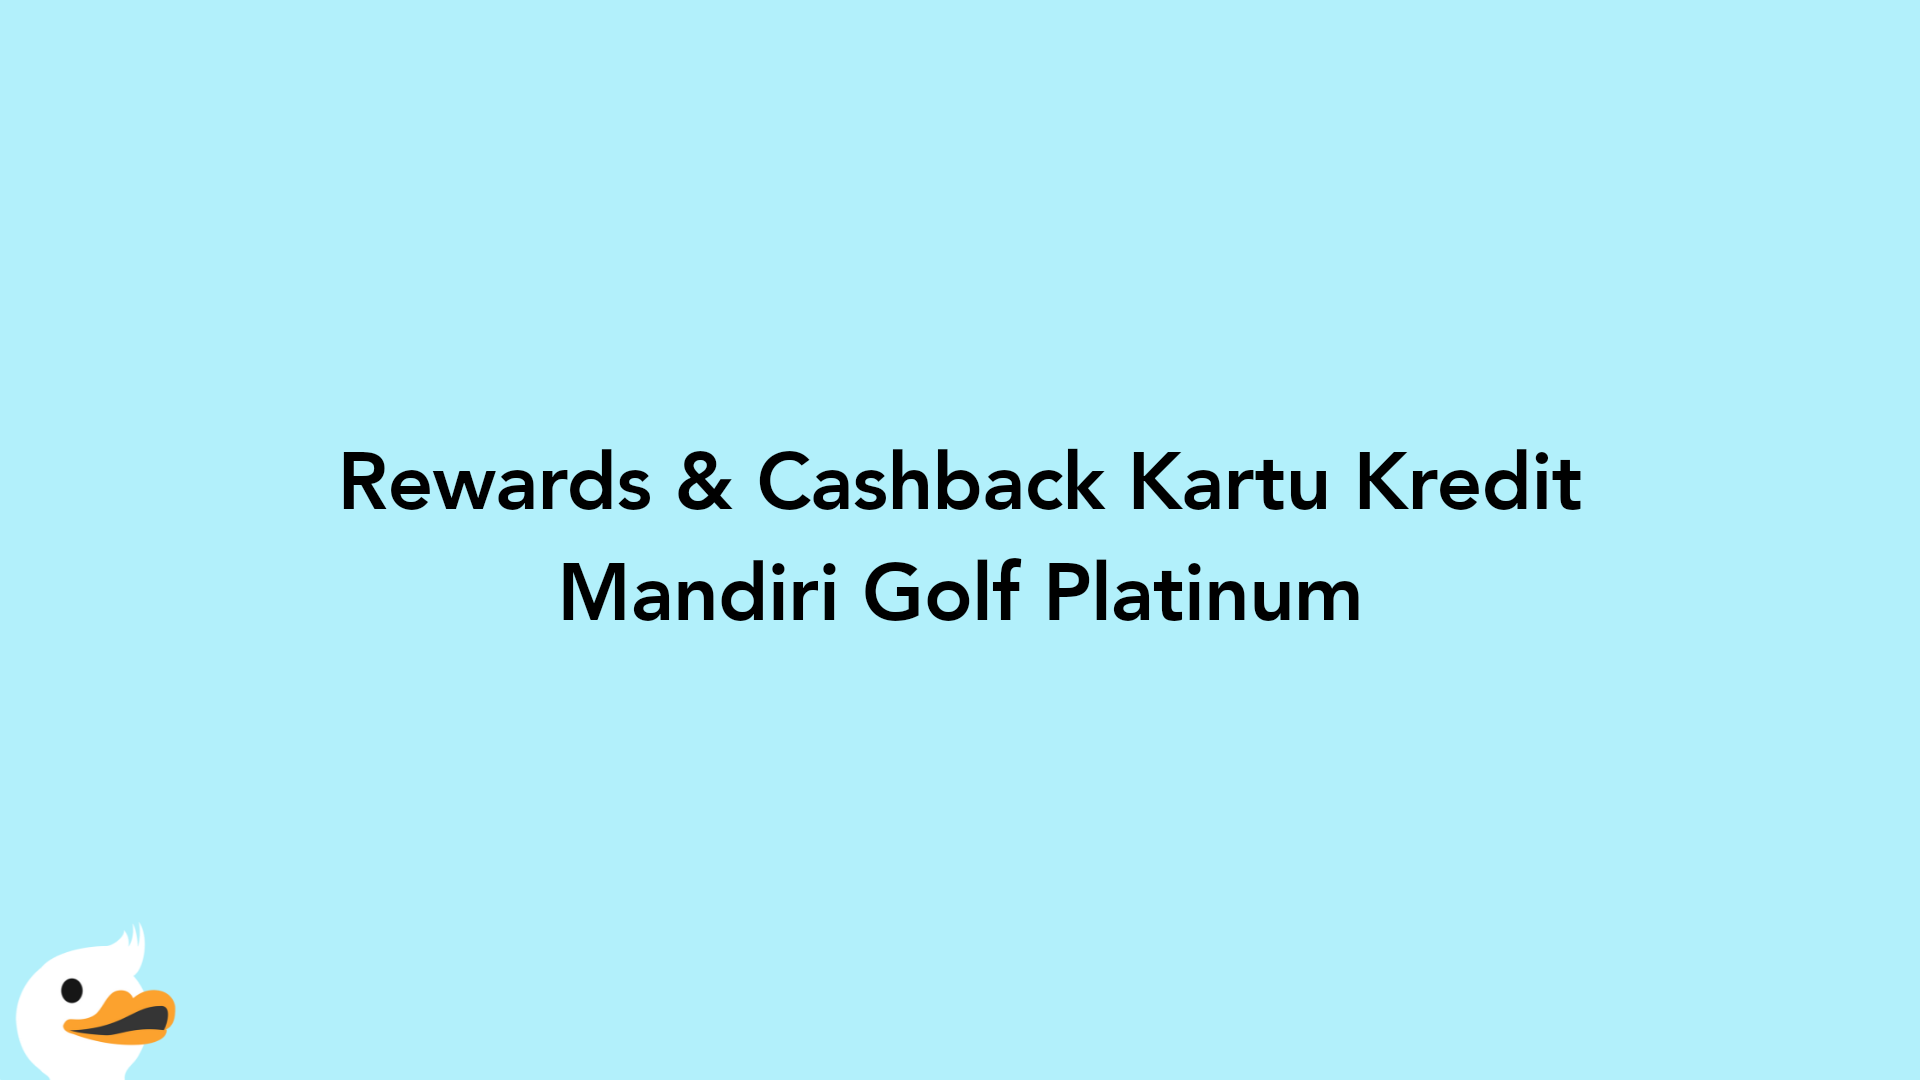 Rewards & Cashback Kartu Kredit Mandiri Golf Platinum